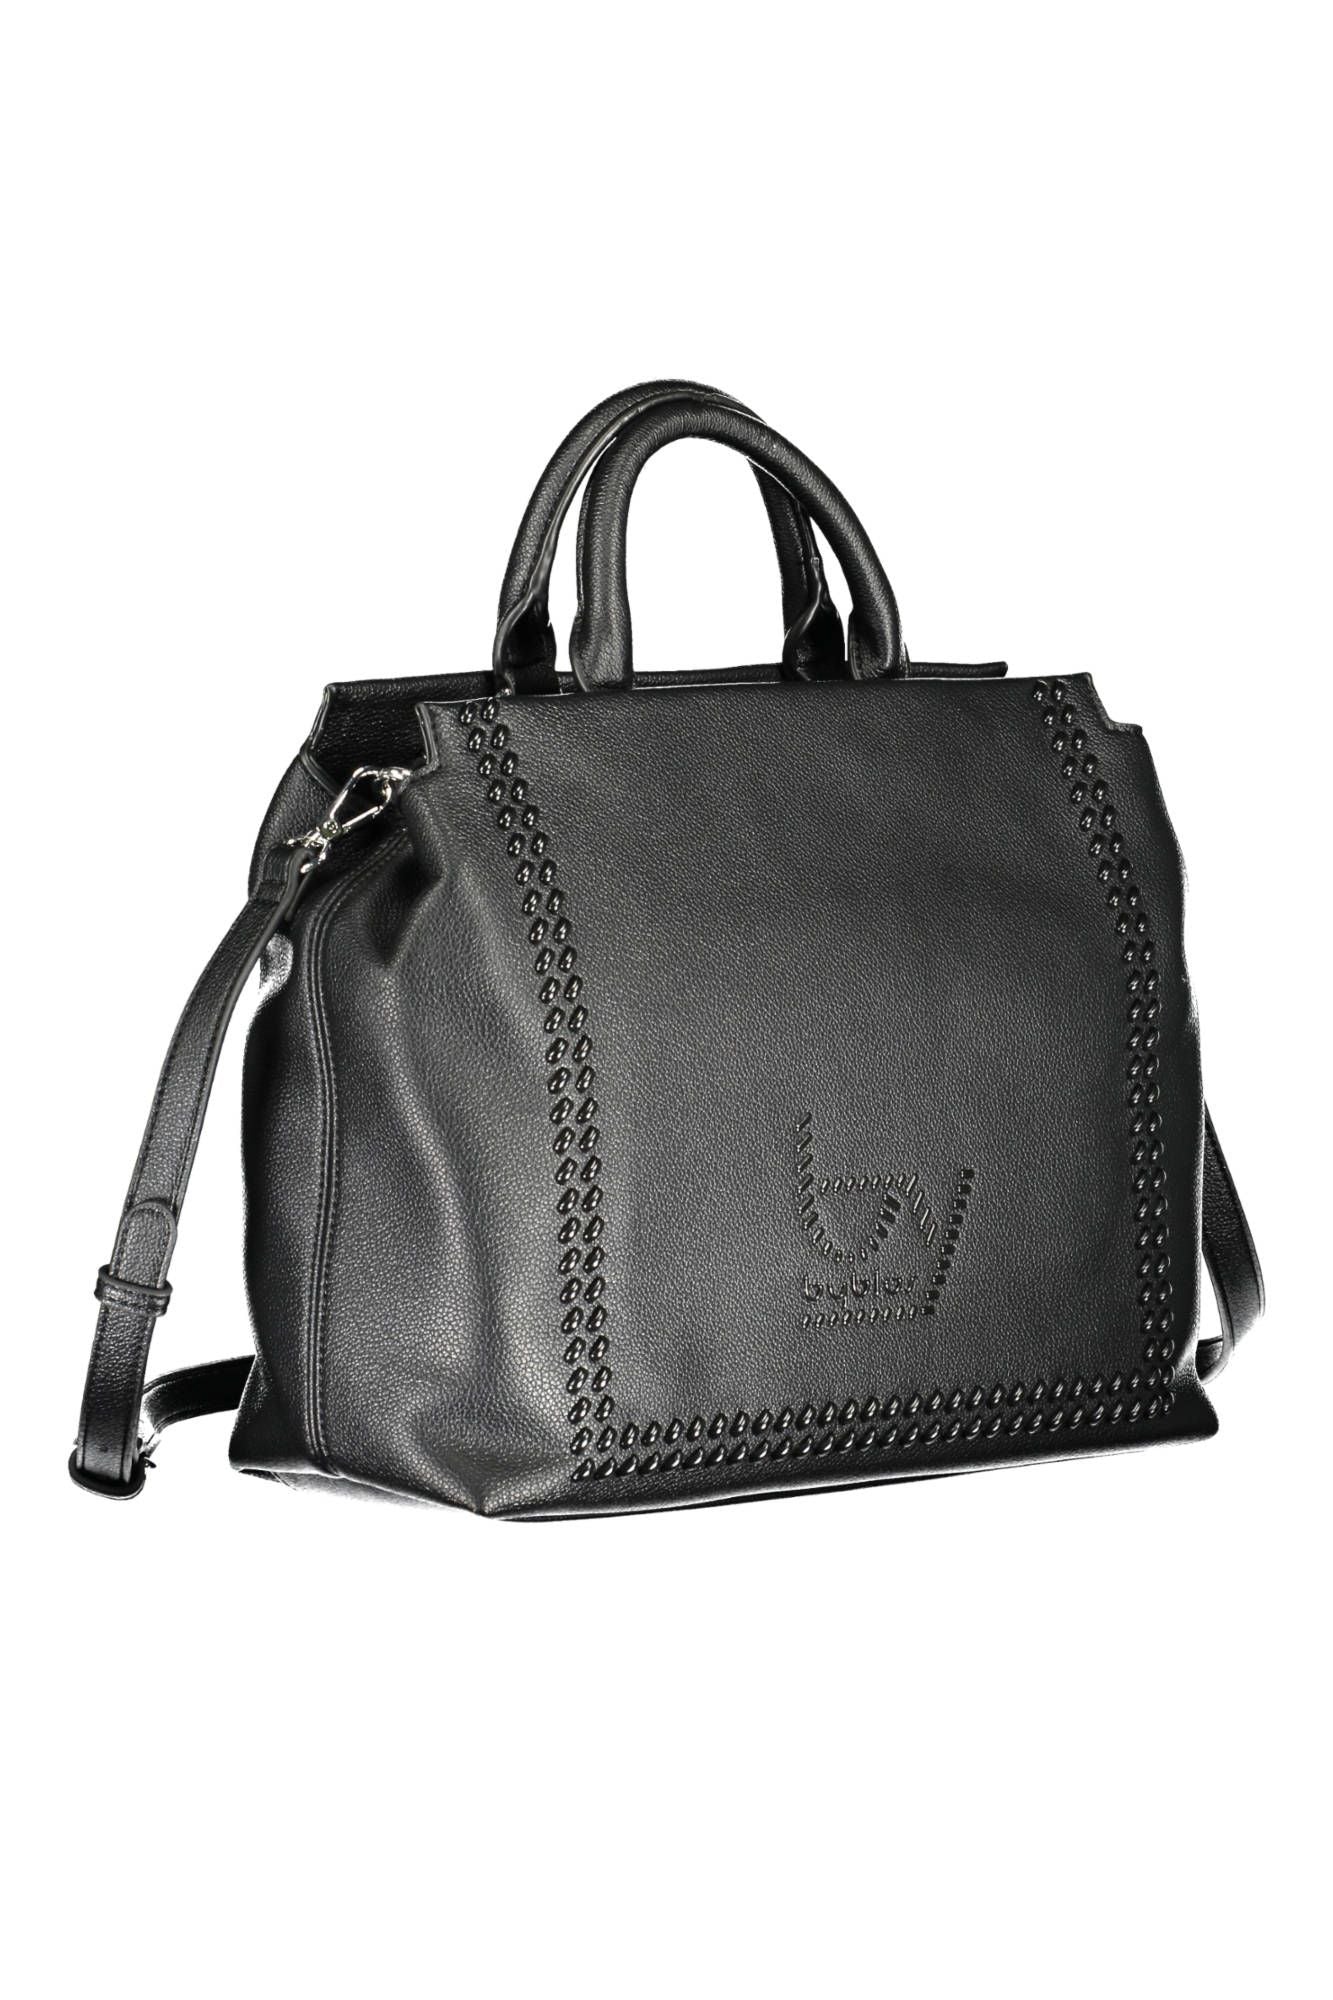 Elegant Two-Handle Black Handbag with Contrasting Details